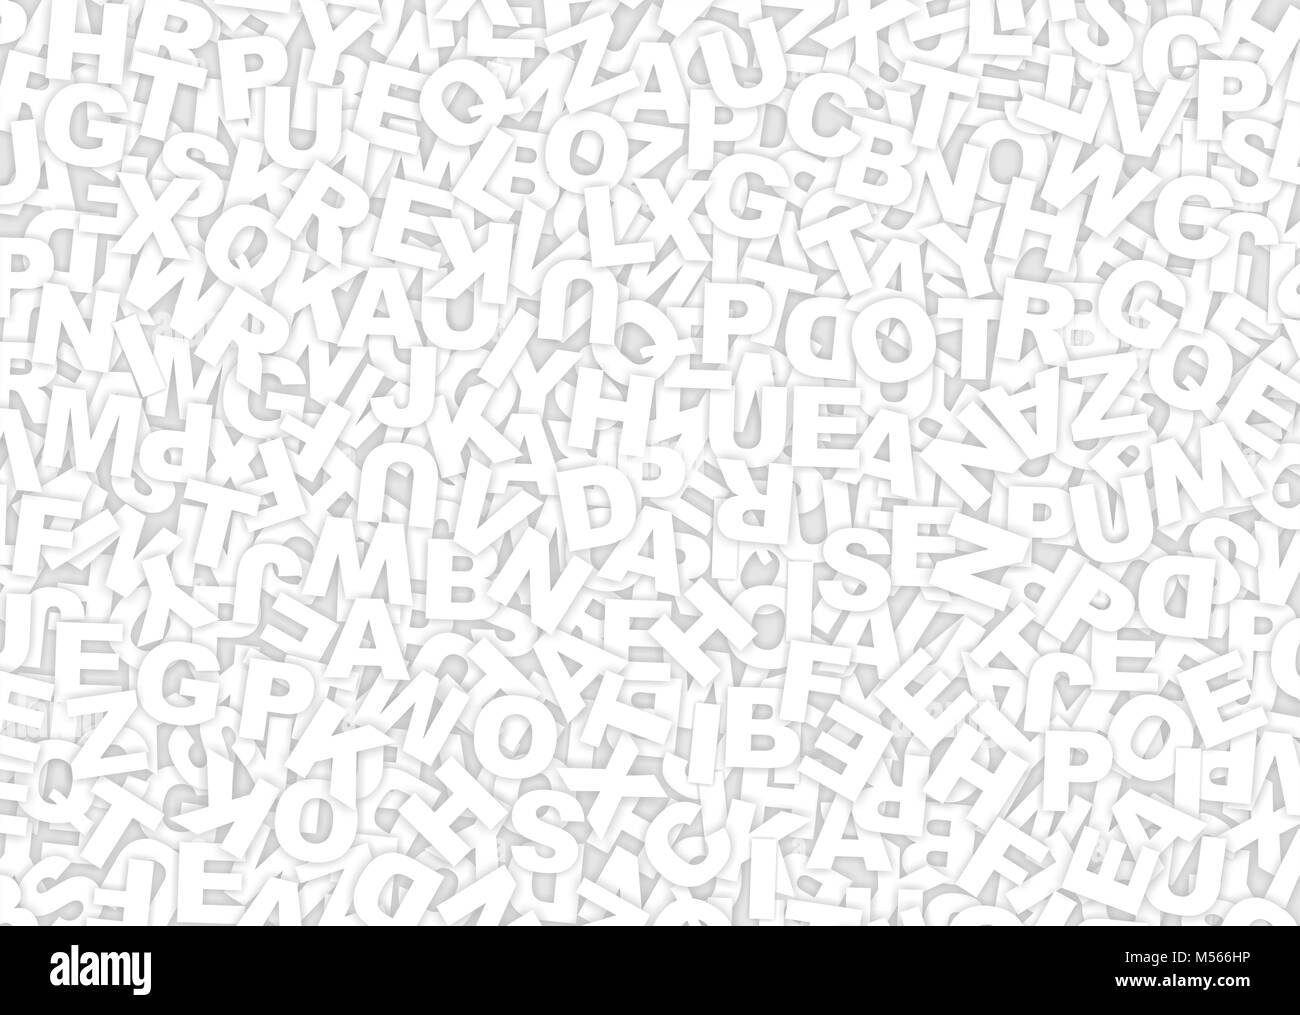 Abstract lettere sfondo. mescolare alfabeto Foto Stock